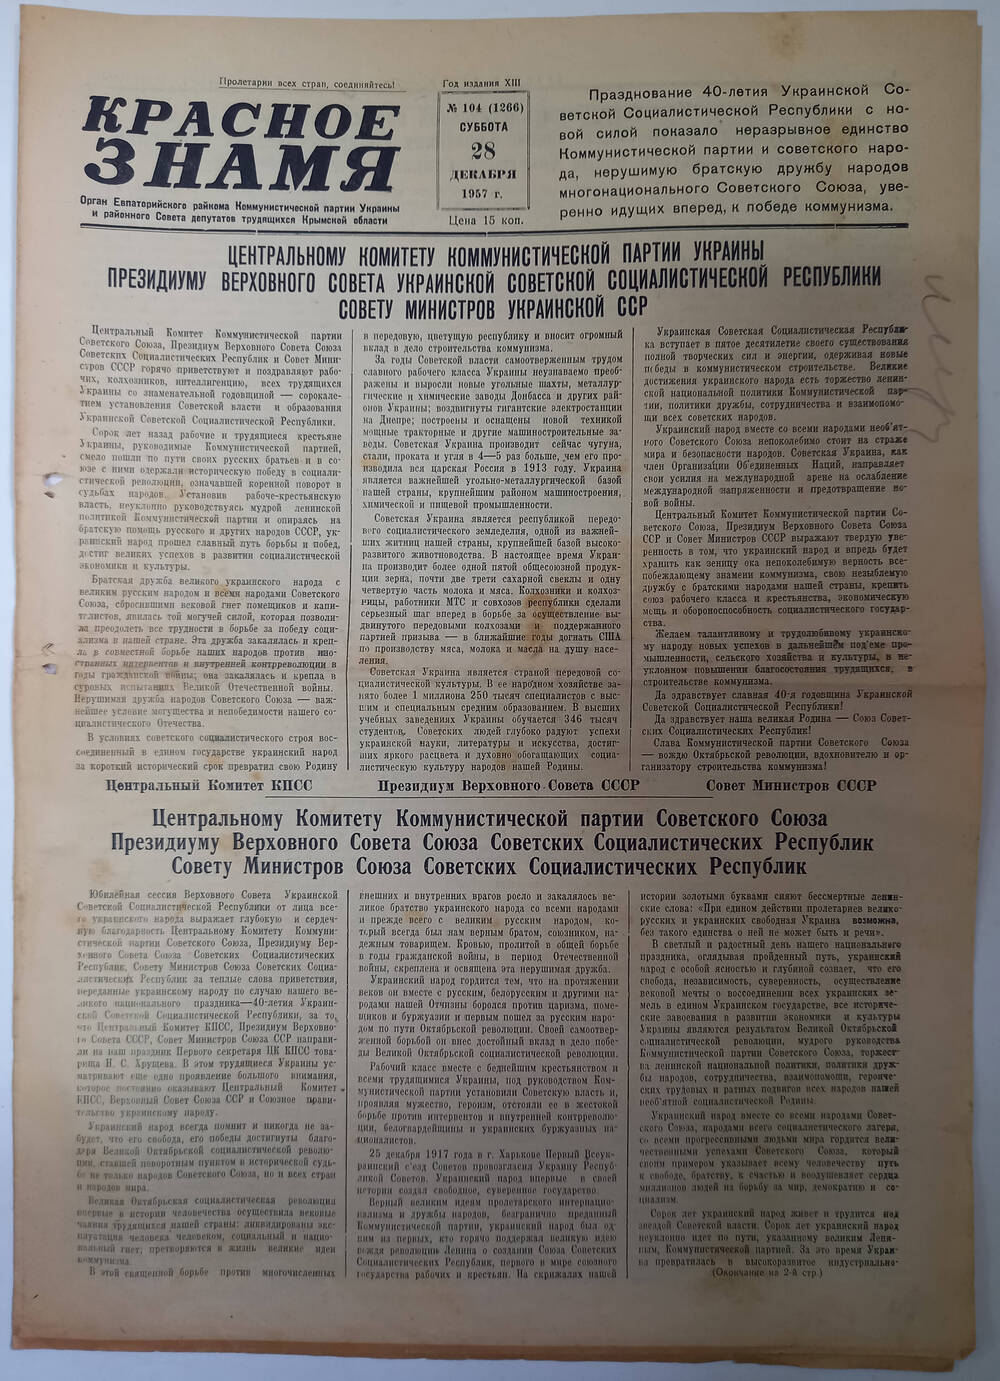 Газета Красное знамя №104(1266) от 28.12.1957 г.